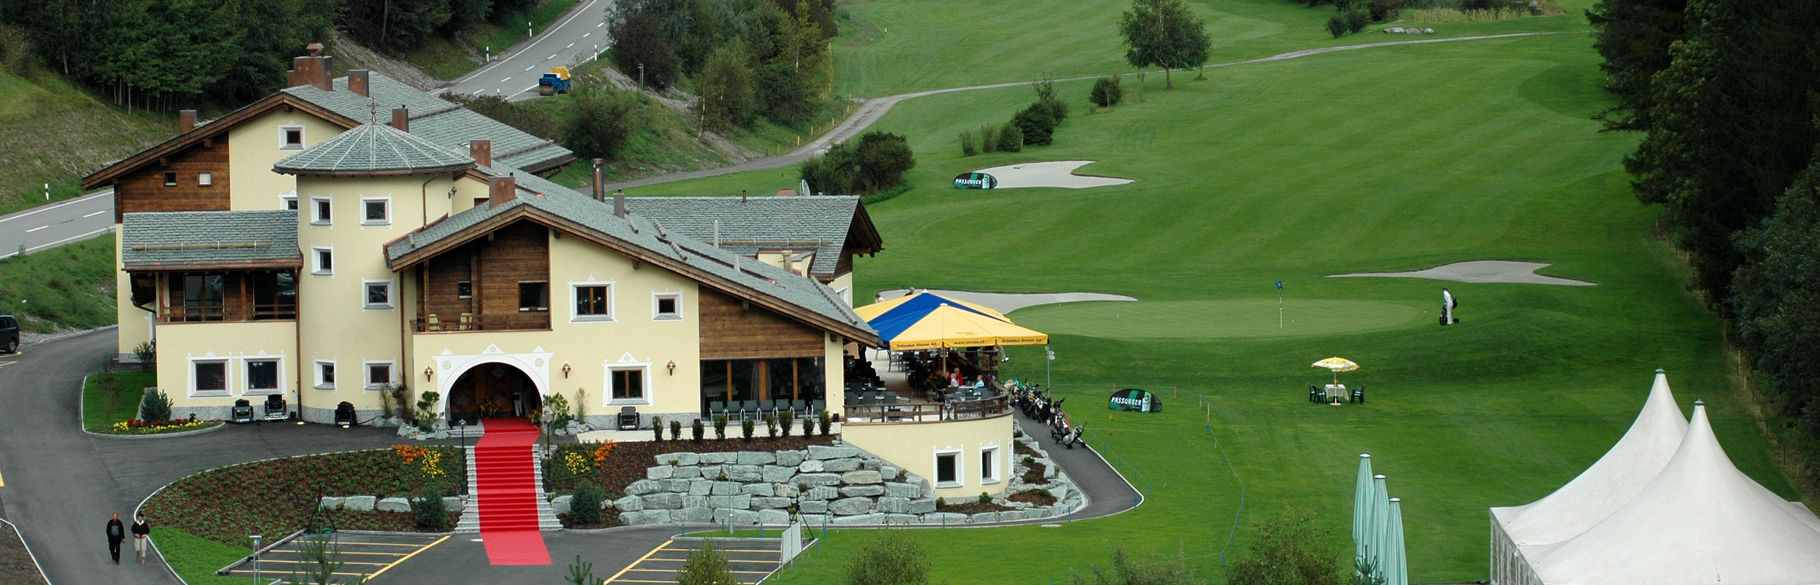 Clubhaus – Golf Club Alvaneu Bad